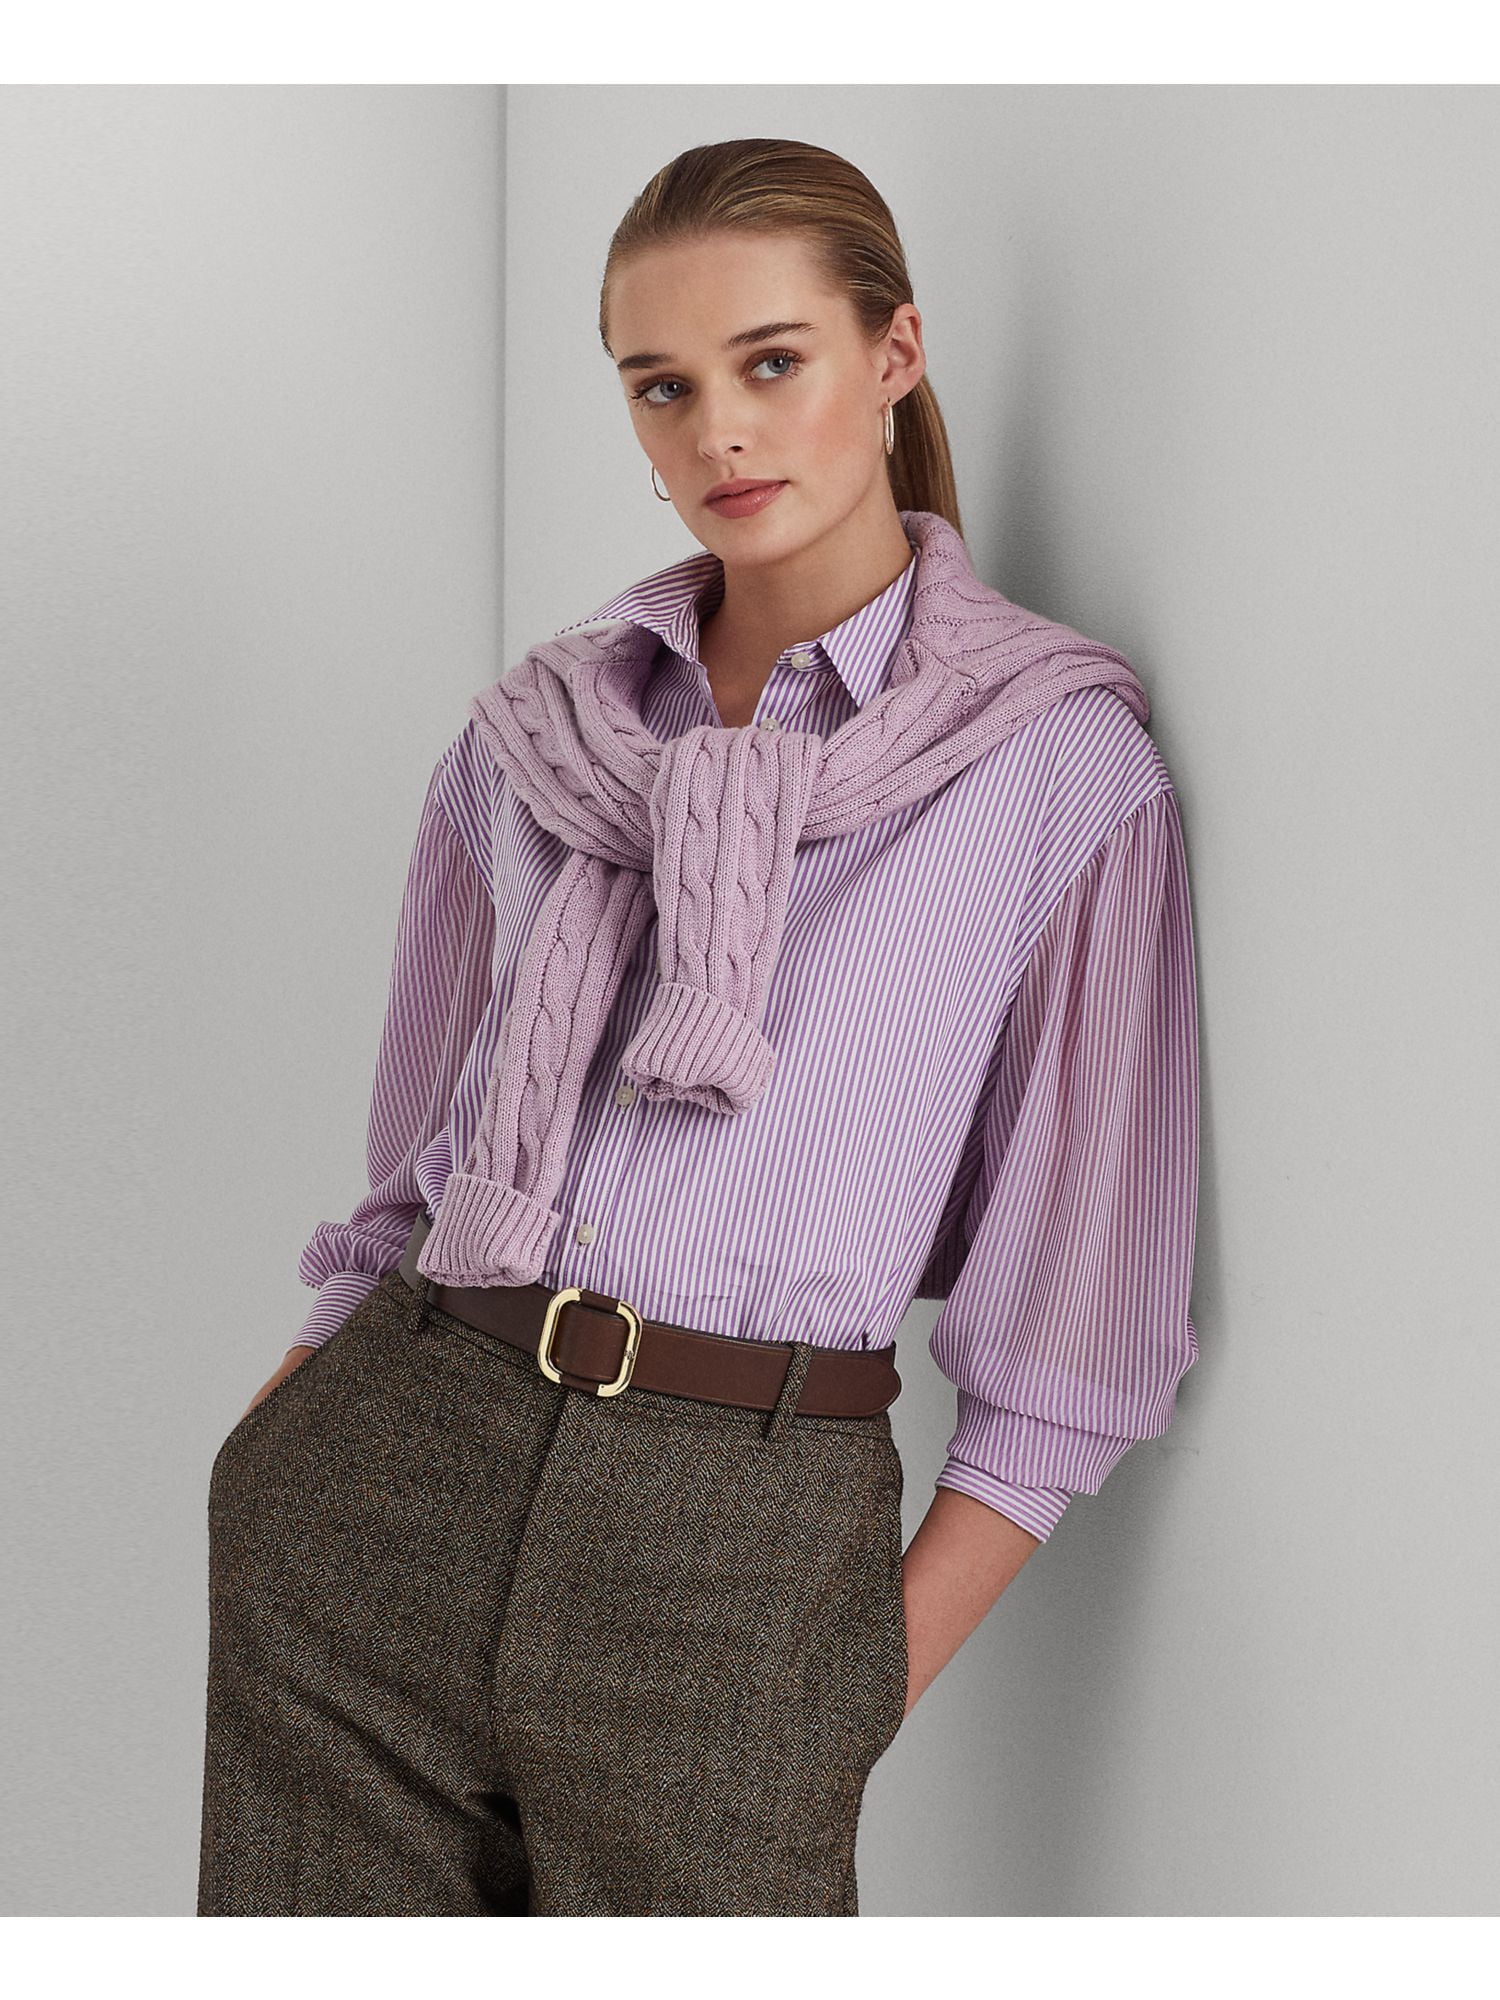 LAUREN RALPH LAUREN Womens Purple Striped Long Sleeve Point Collar Wear To  Work Button Up Top S